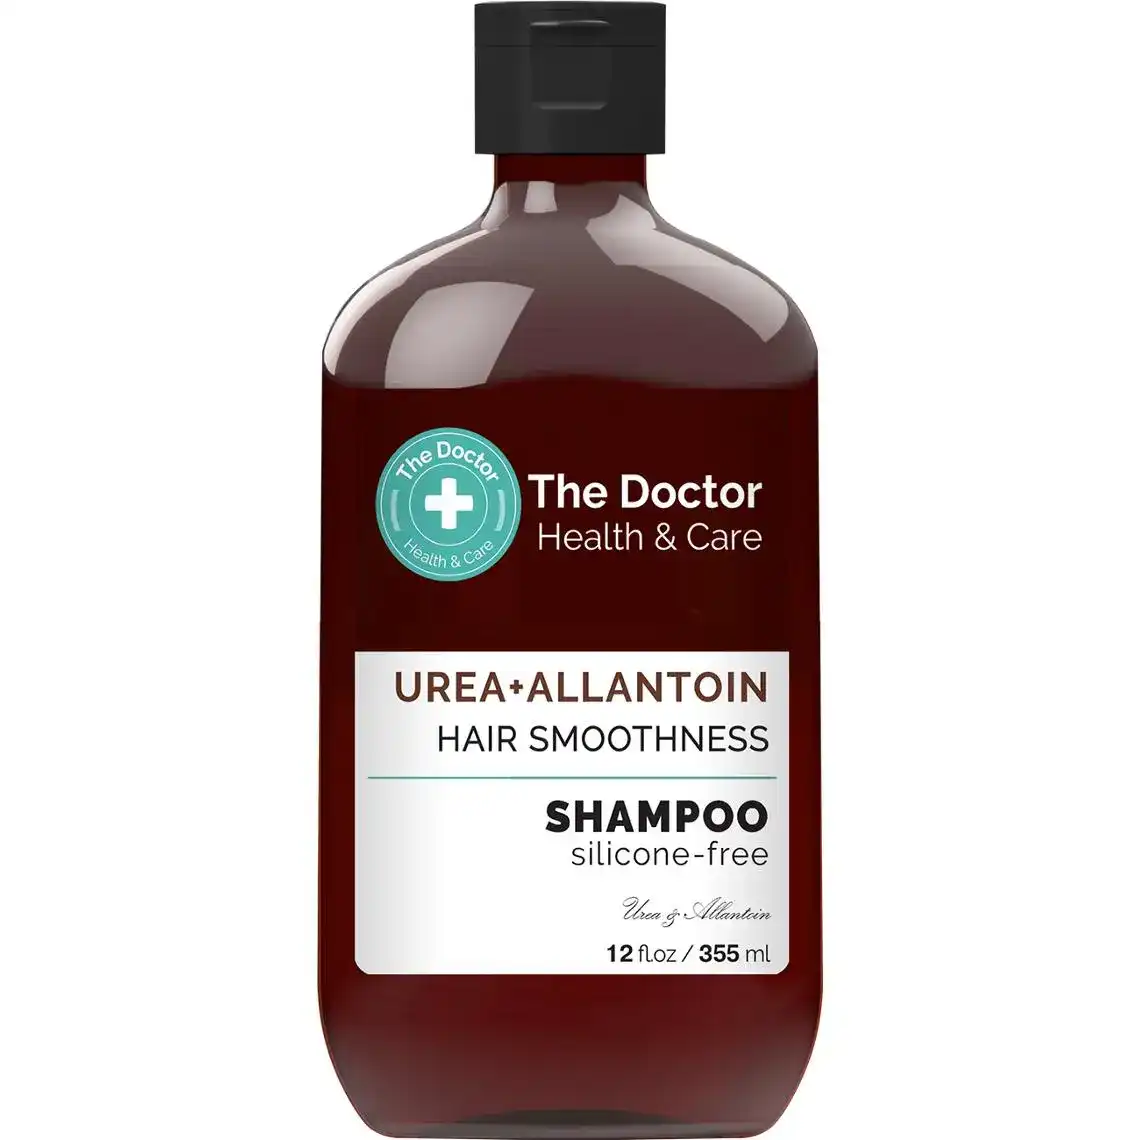 Шампунь The Doctor Health & Care Гладкость волос уреа + аллантоин 355 мл